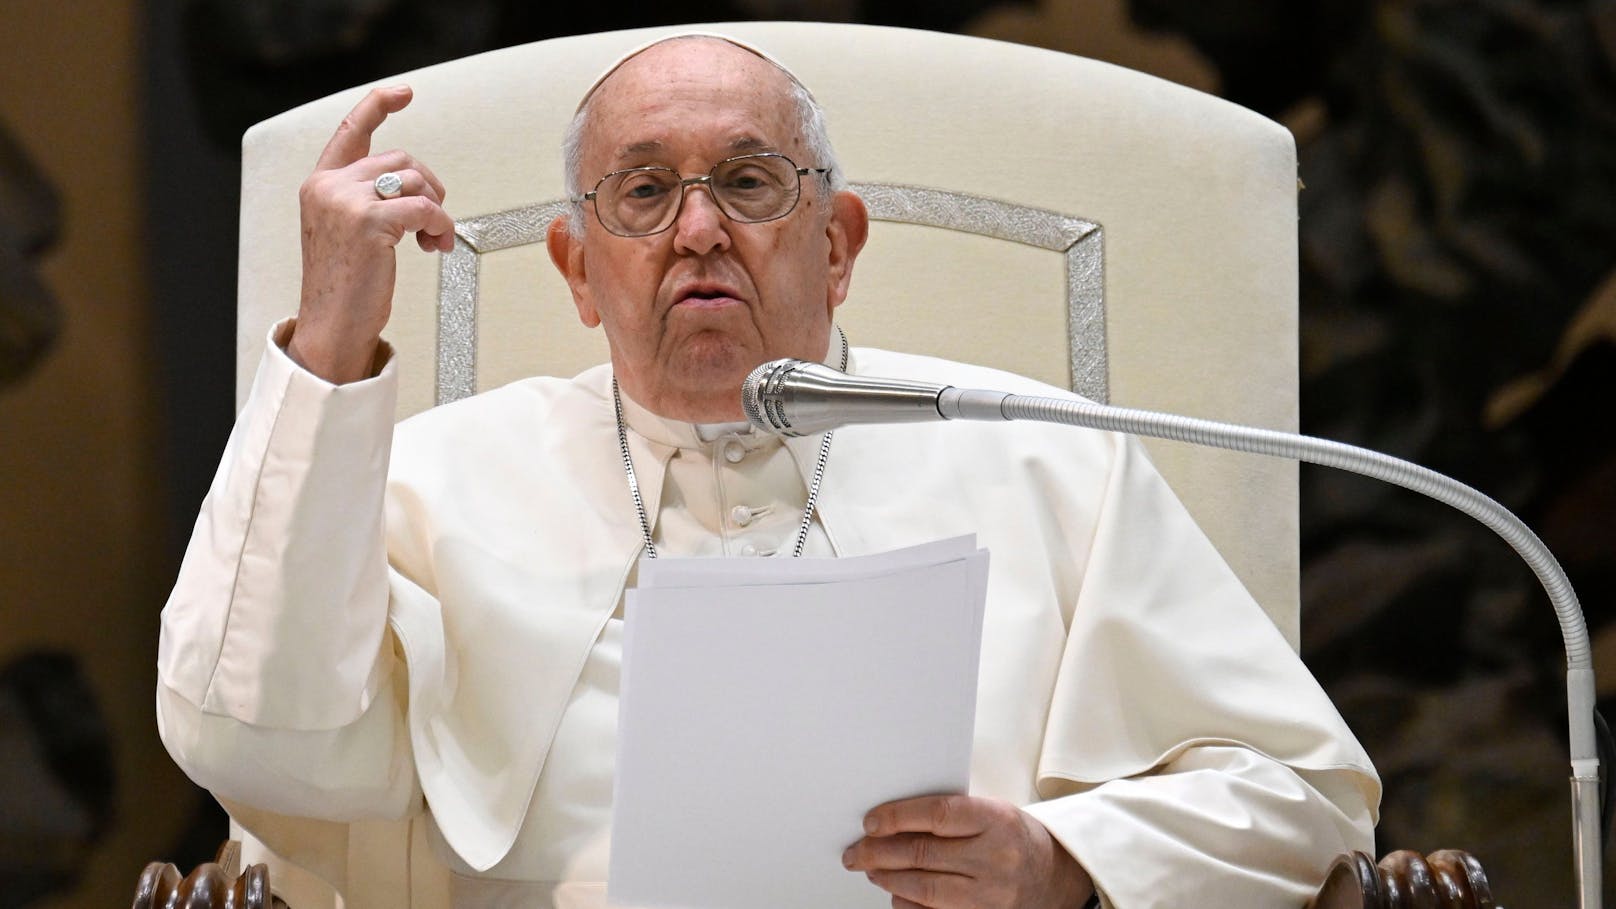 Papst Franziskus sieht "Gender-Theorie" als Gefahr